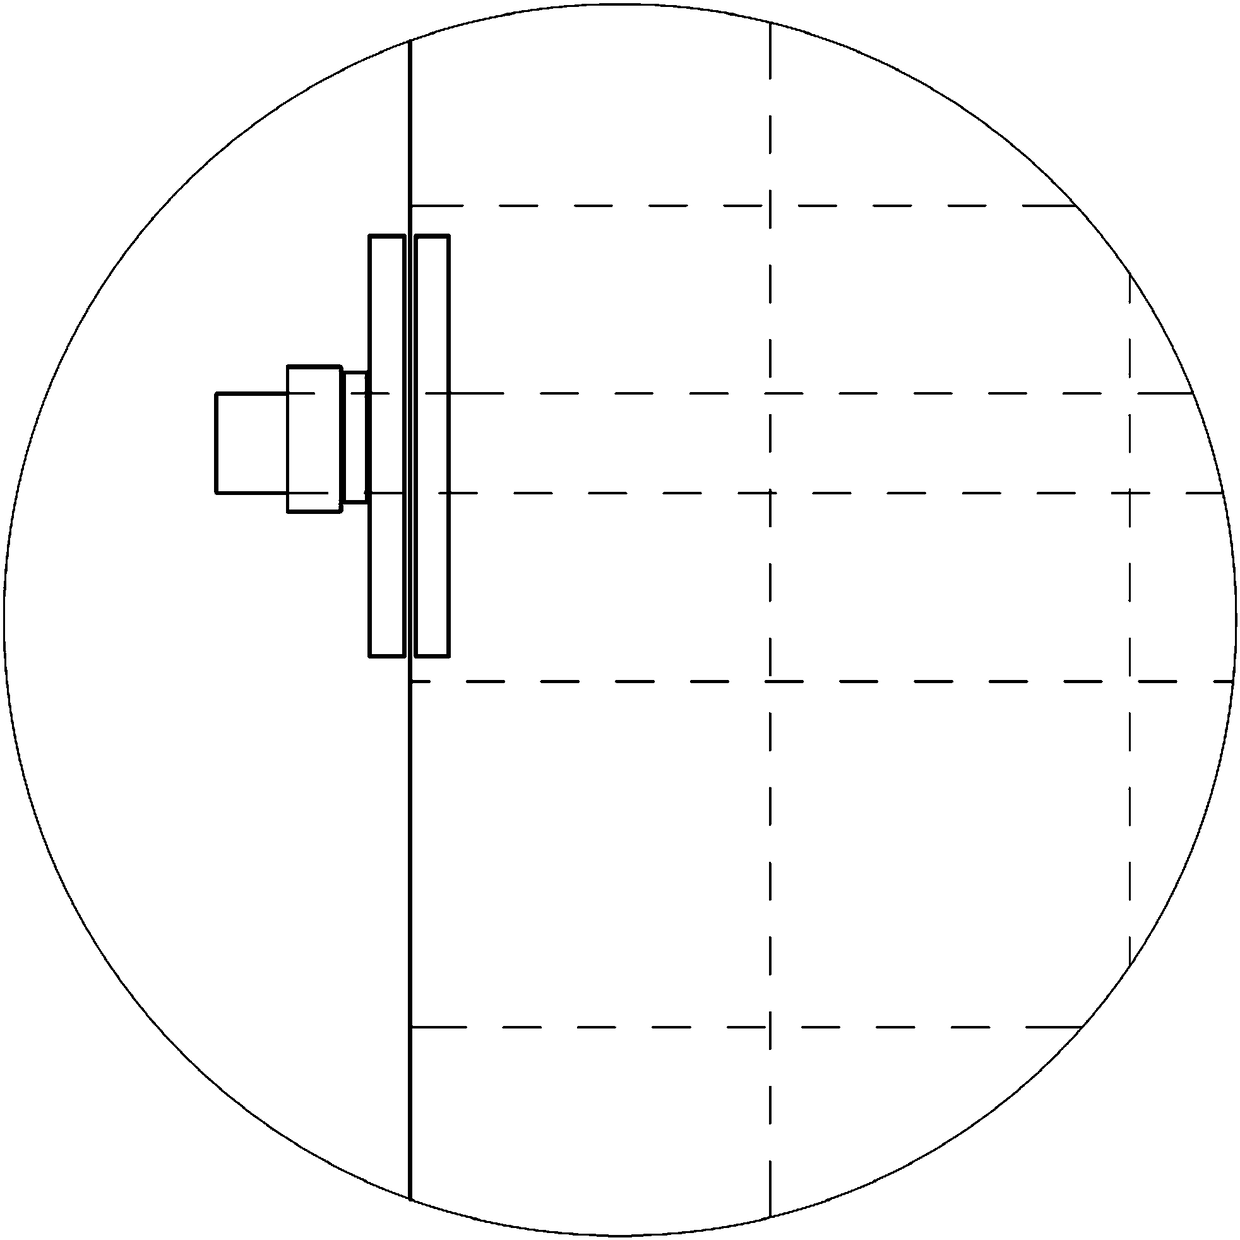 Grid distal targeting device and distal targeting method